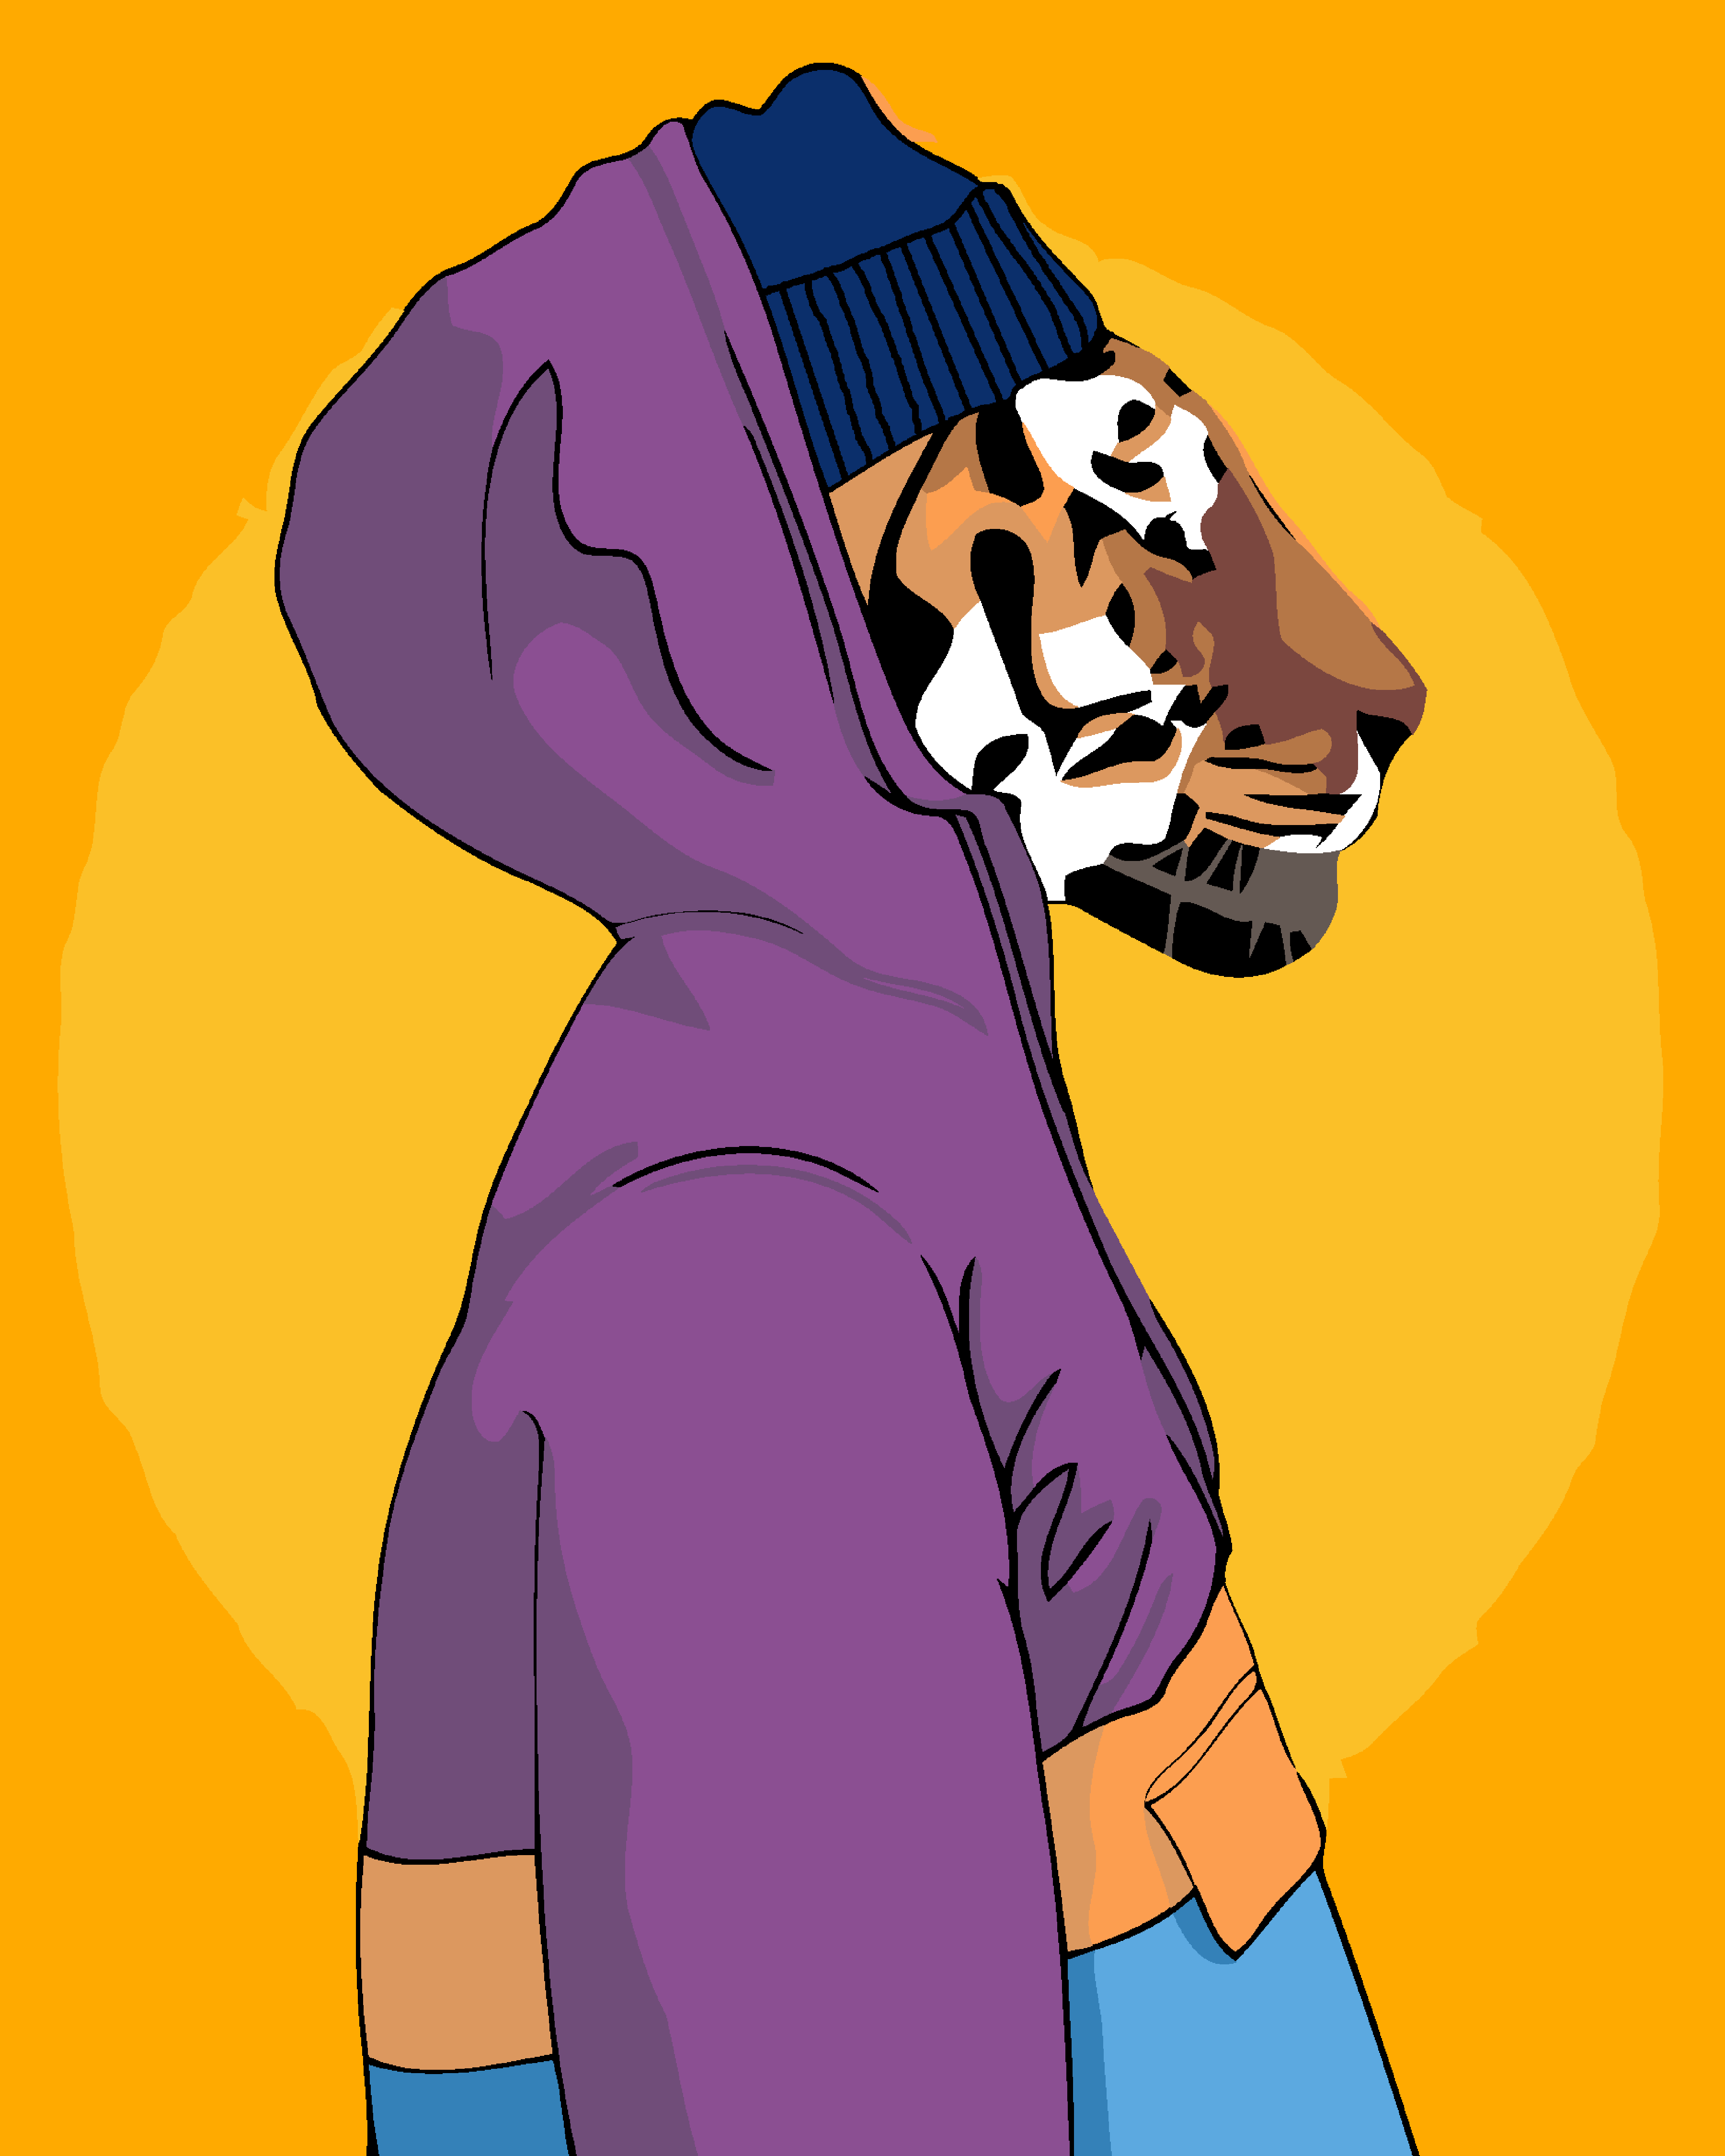 Bright Tiger